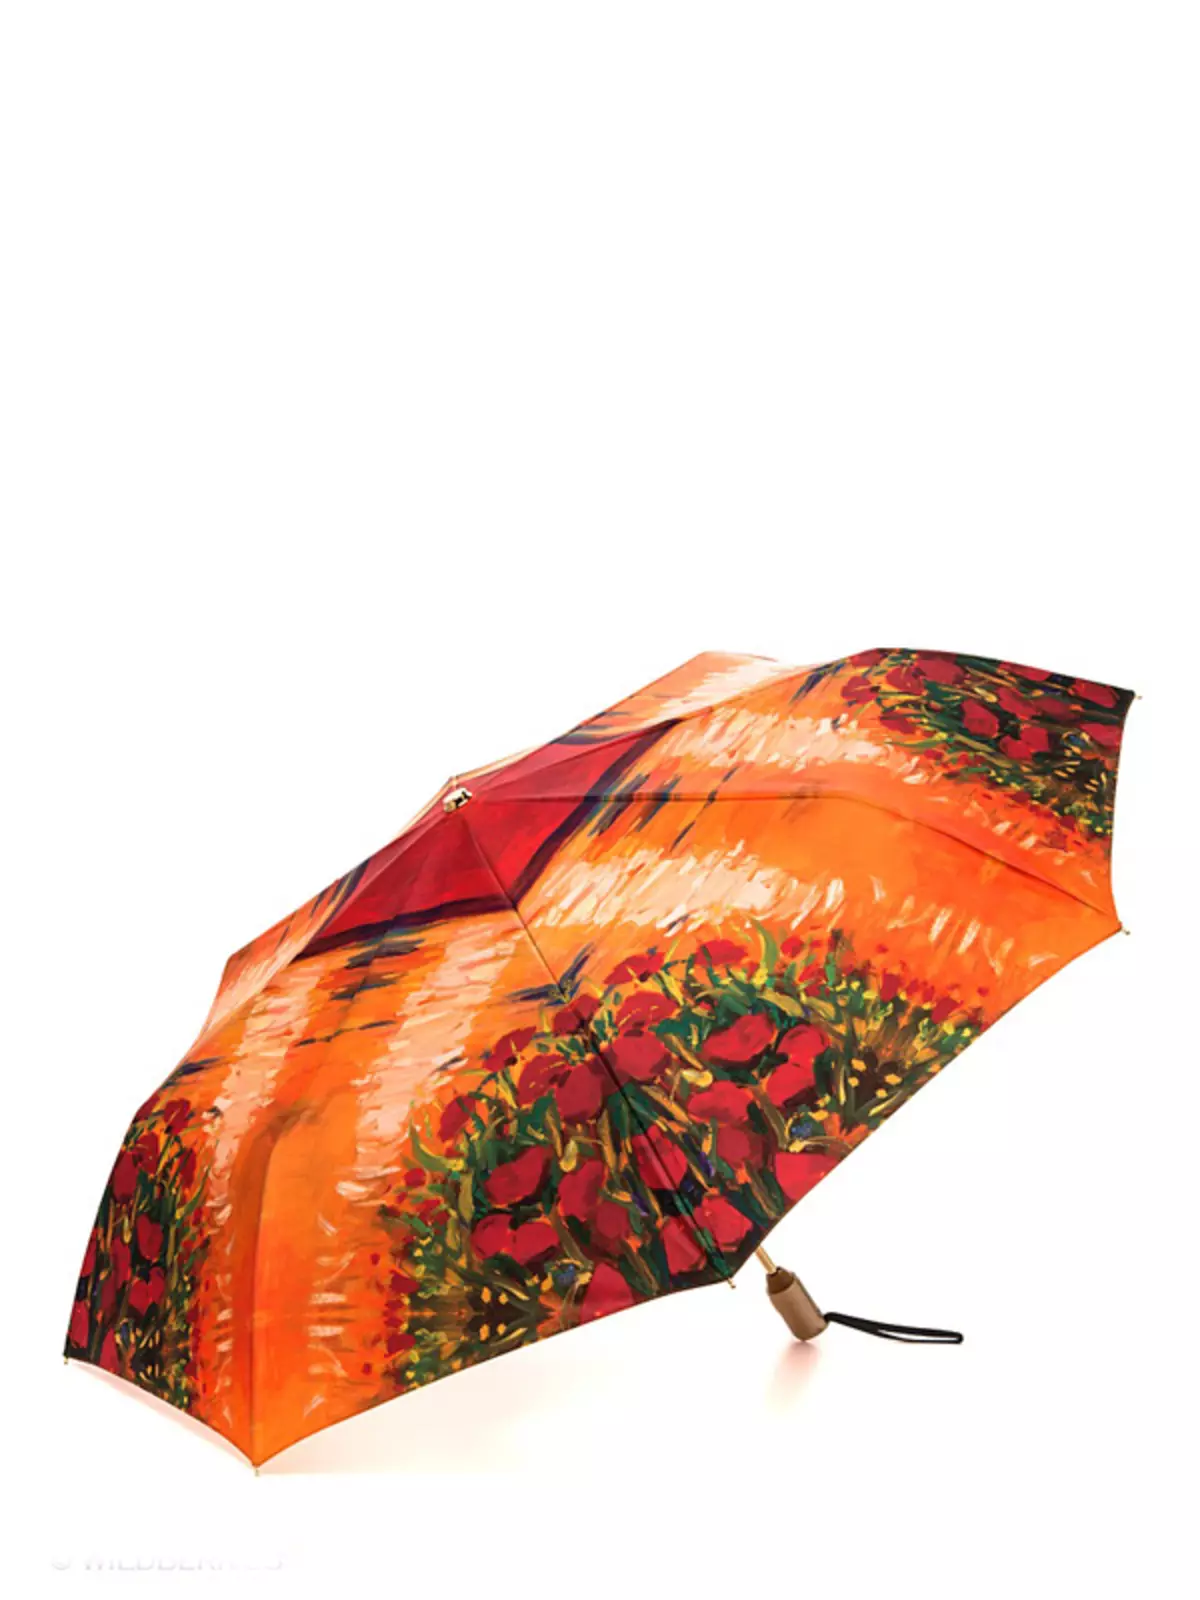 Sunbrella (linepe tse 72): Basali ba bopalai ba purwork upbrella-cane 15238_37